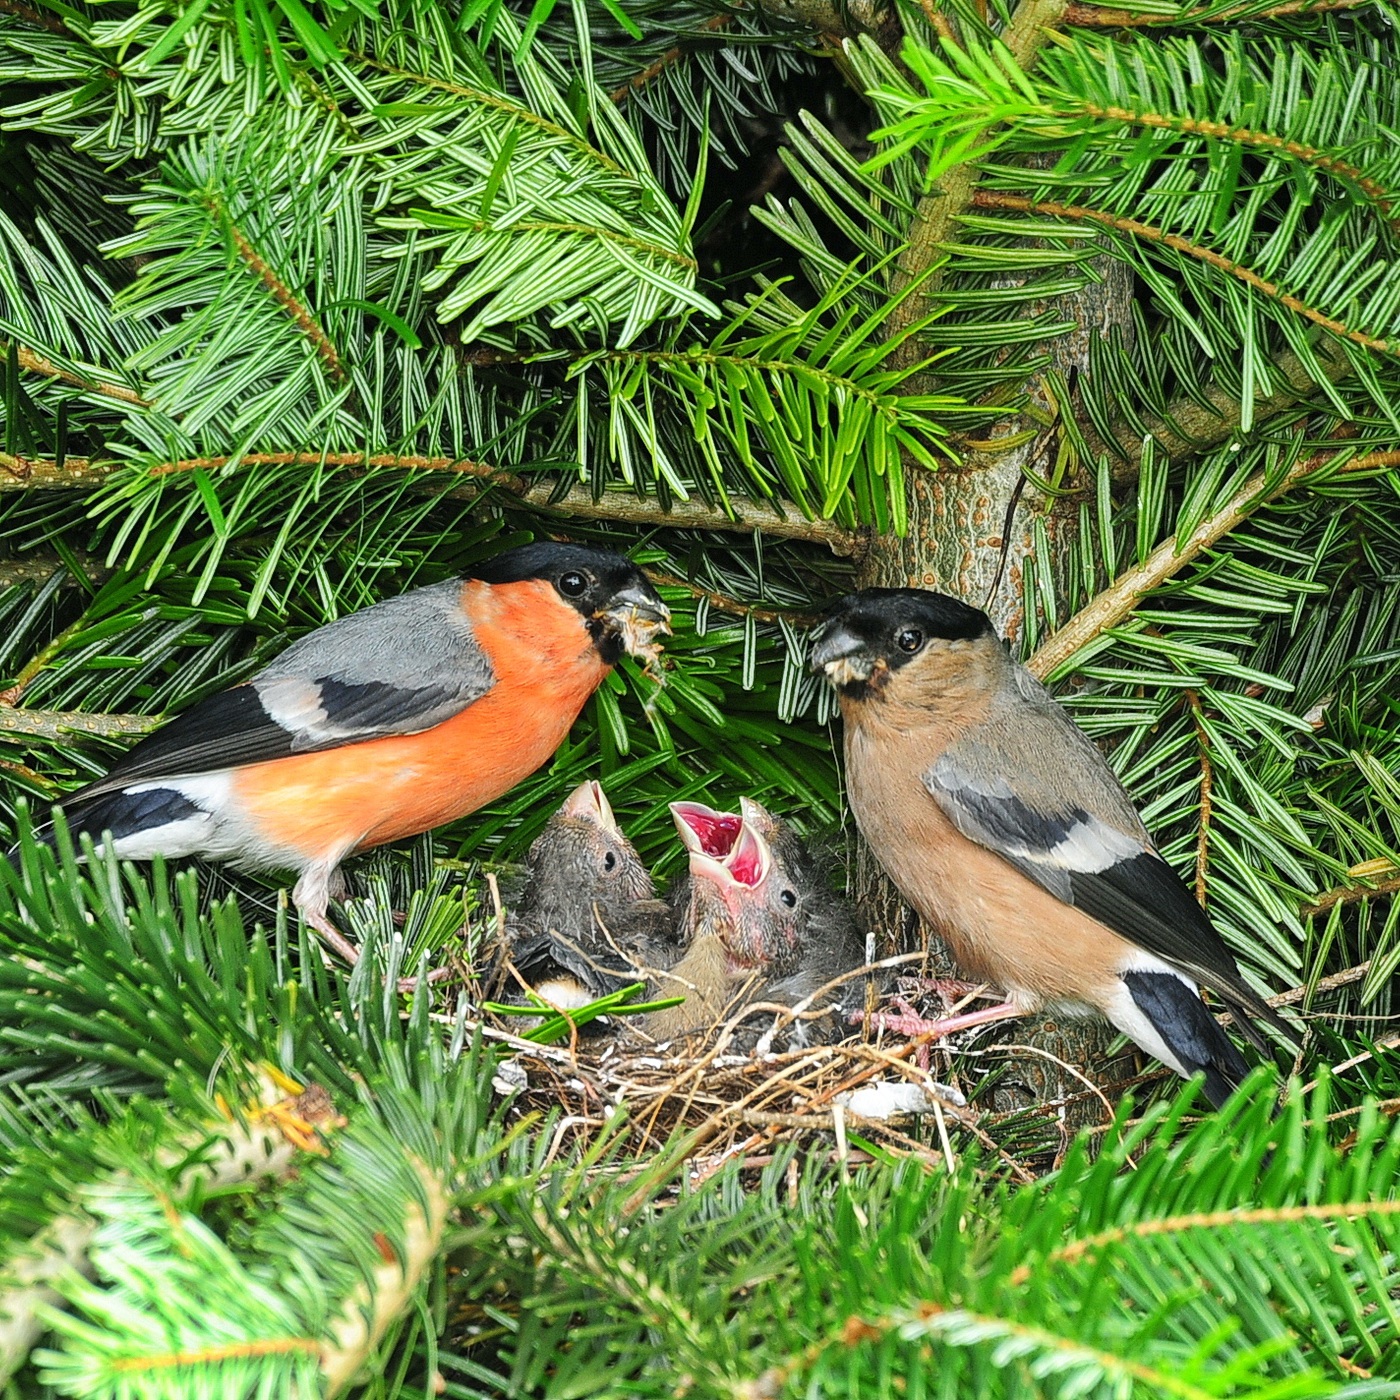 Weihnachtsbaumkultur - ein Paradies für Singvögel!